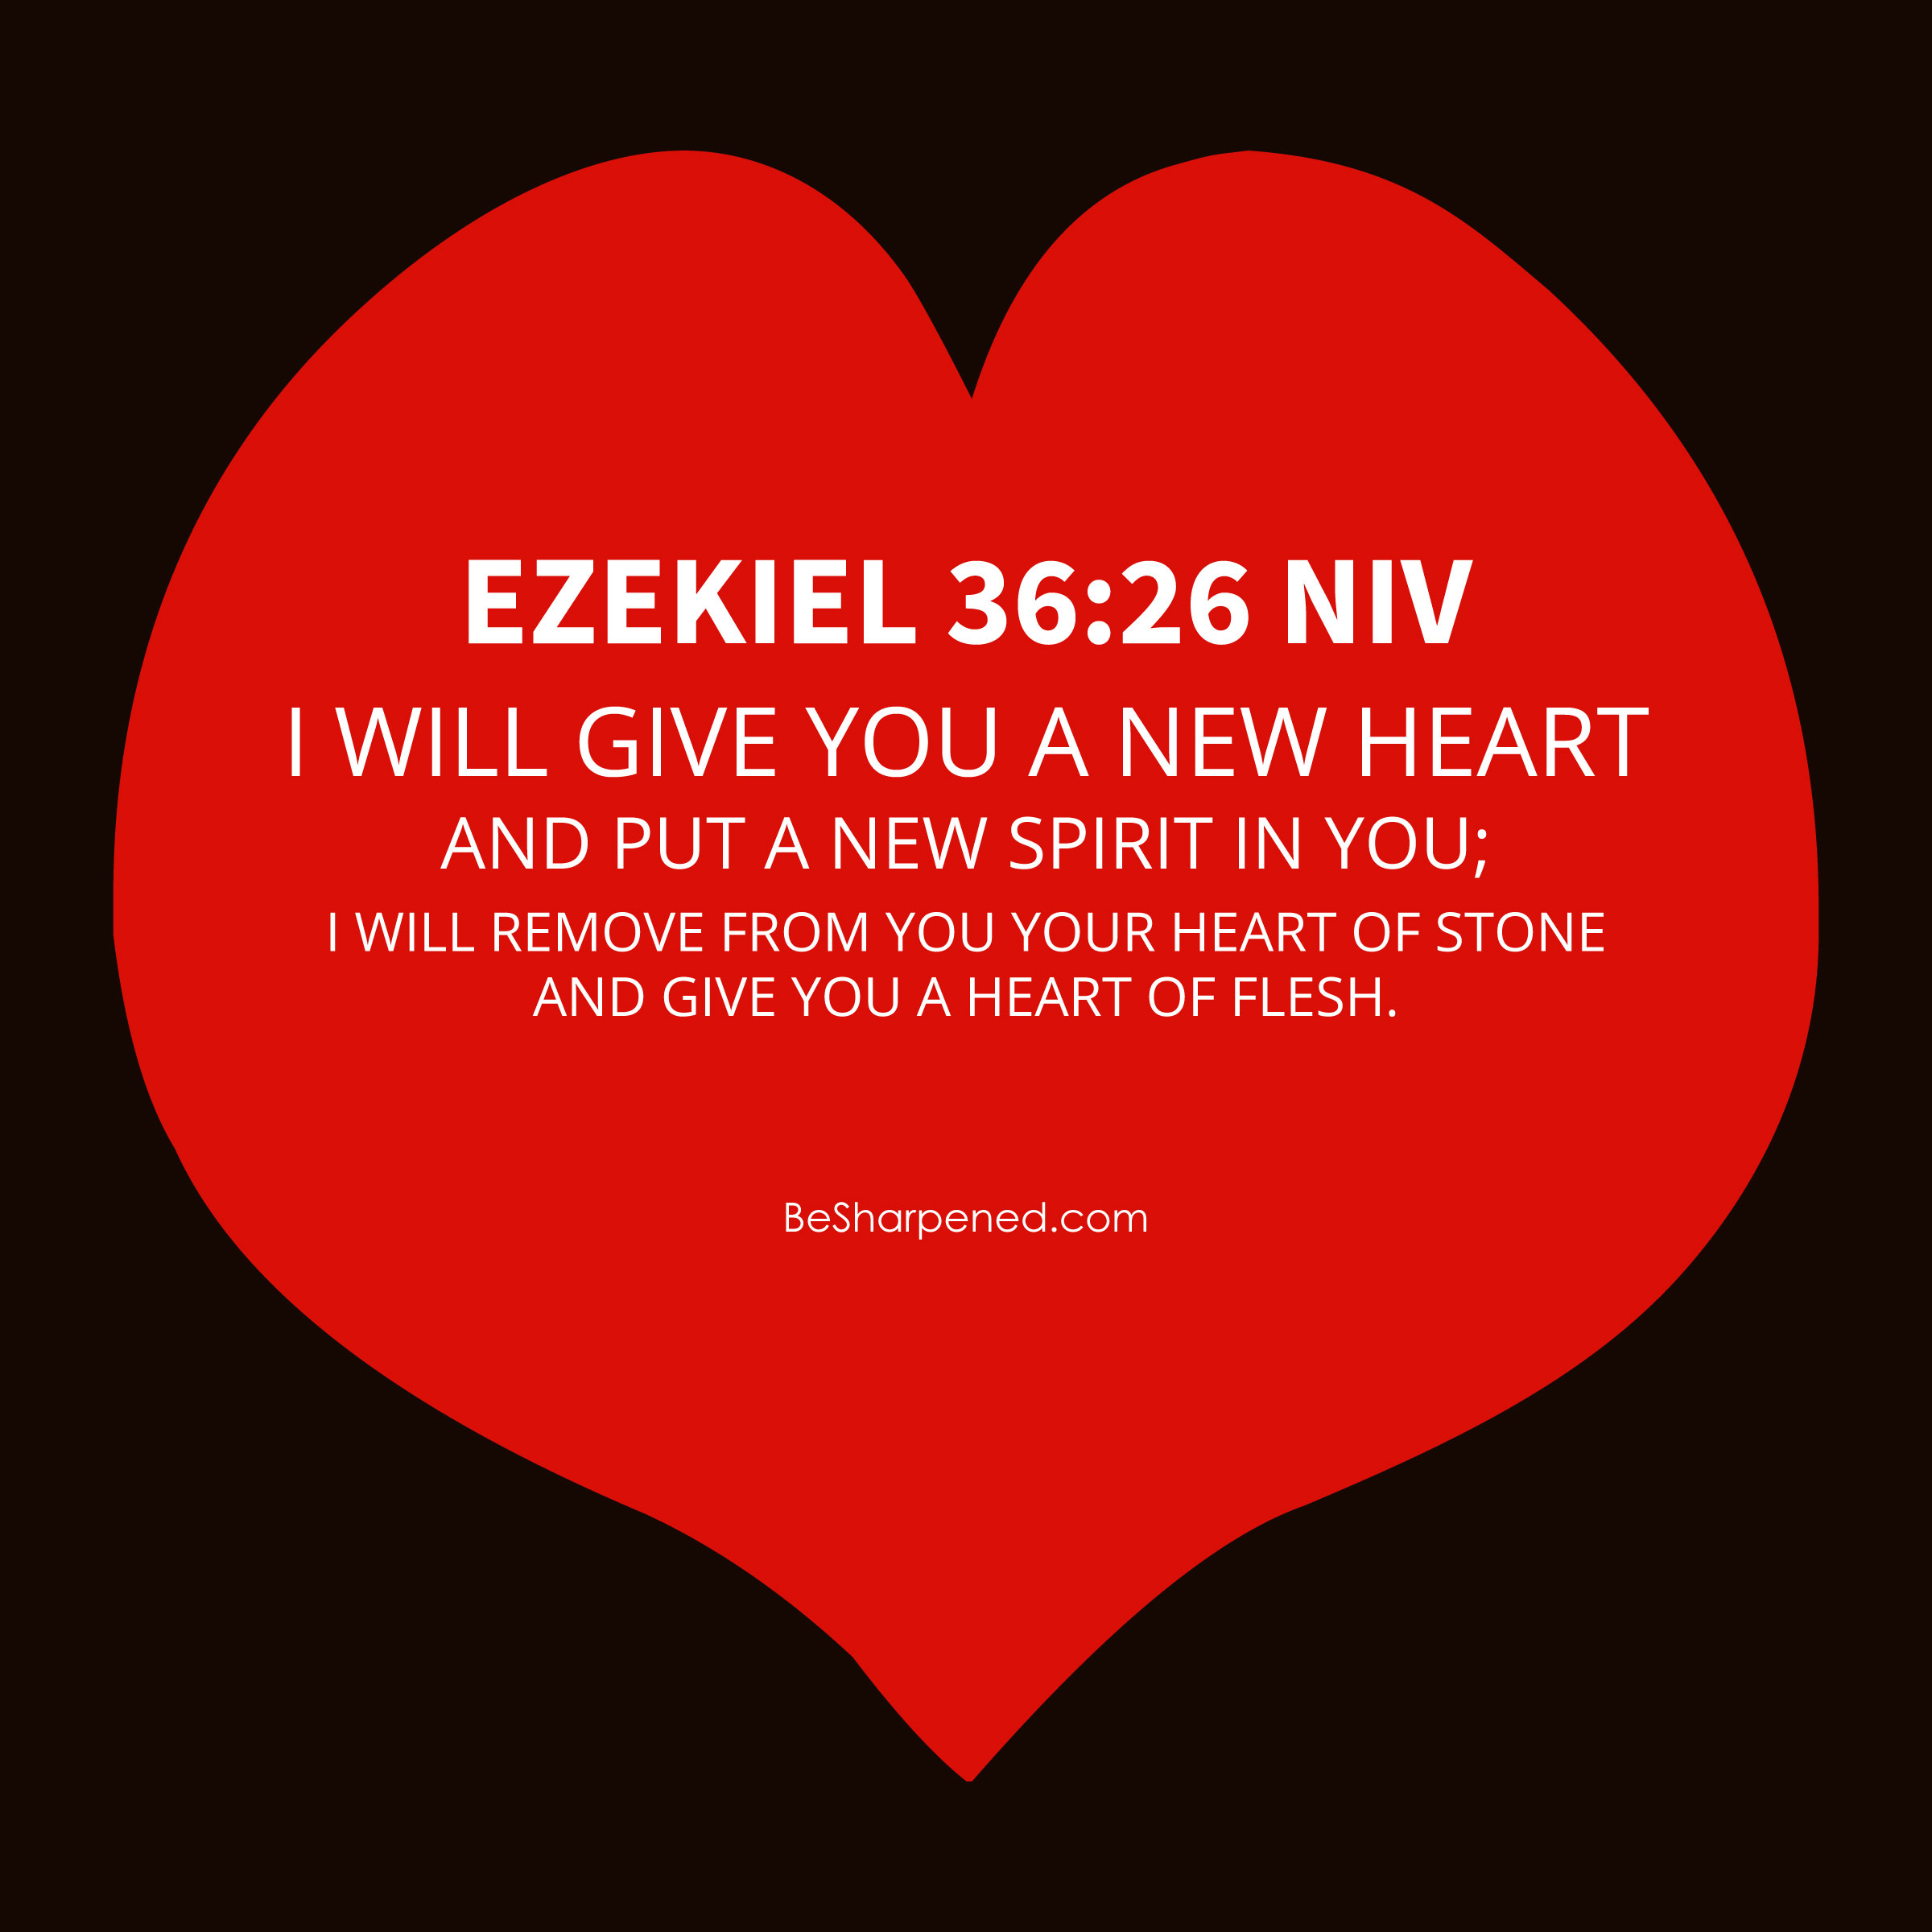 ezekiel 36:26 - a new heart